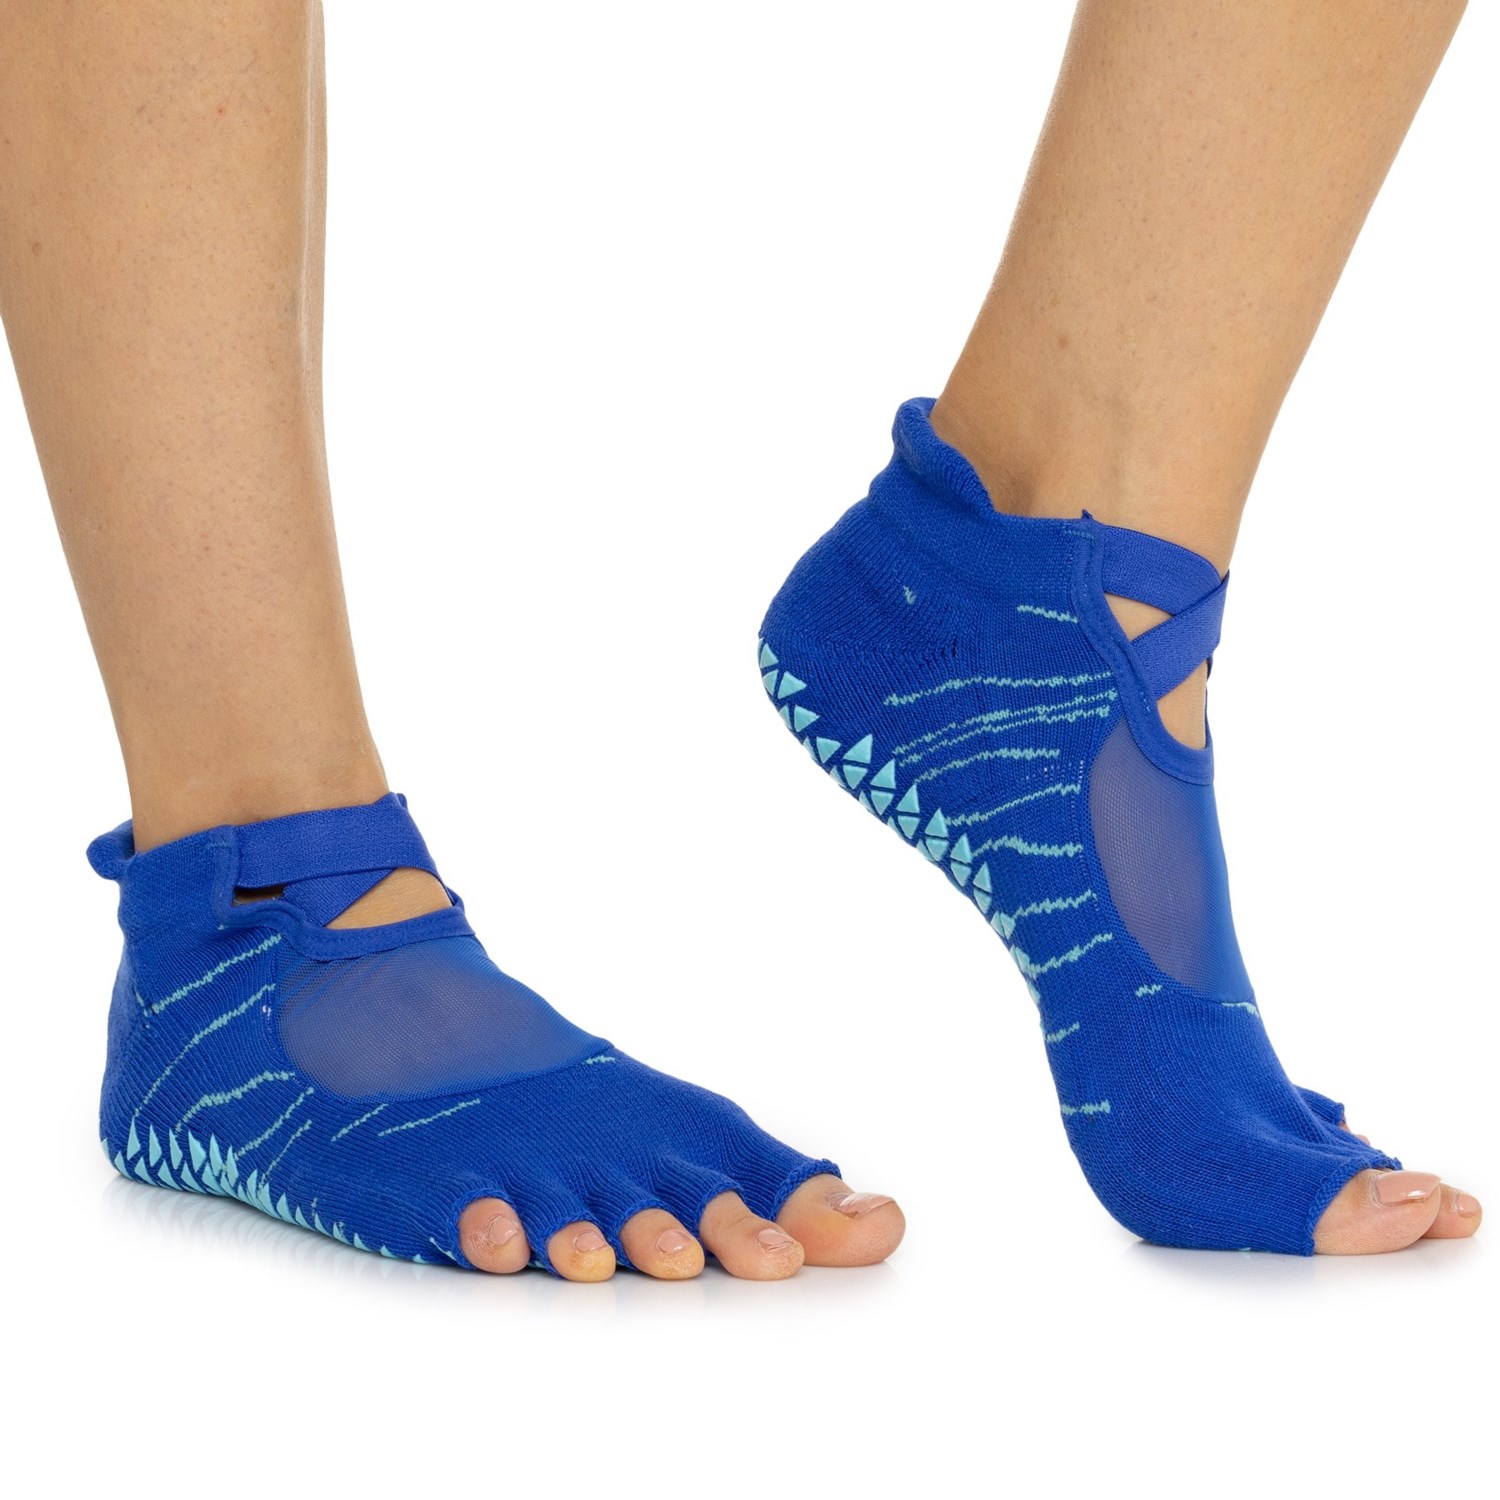 Pointe Studio Small-Medium - Dunes Toeless Grip Socks (For Women